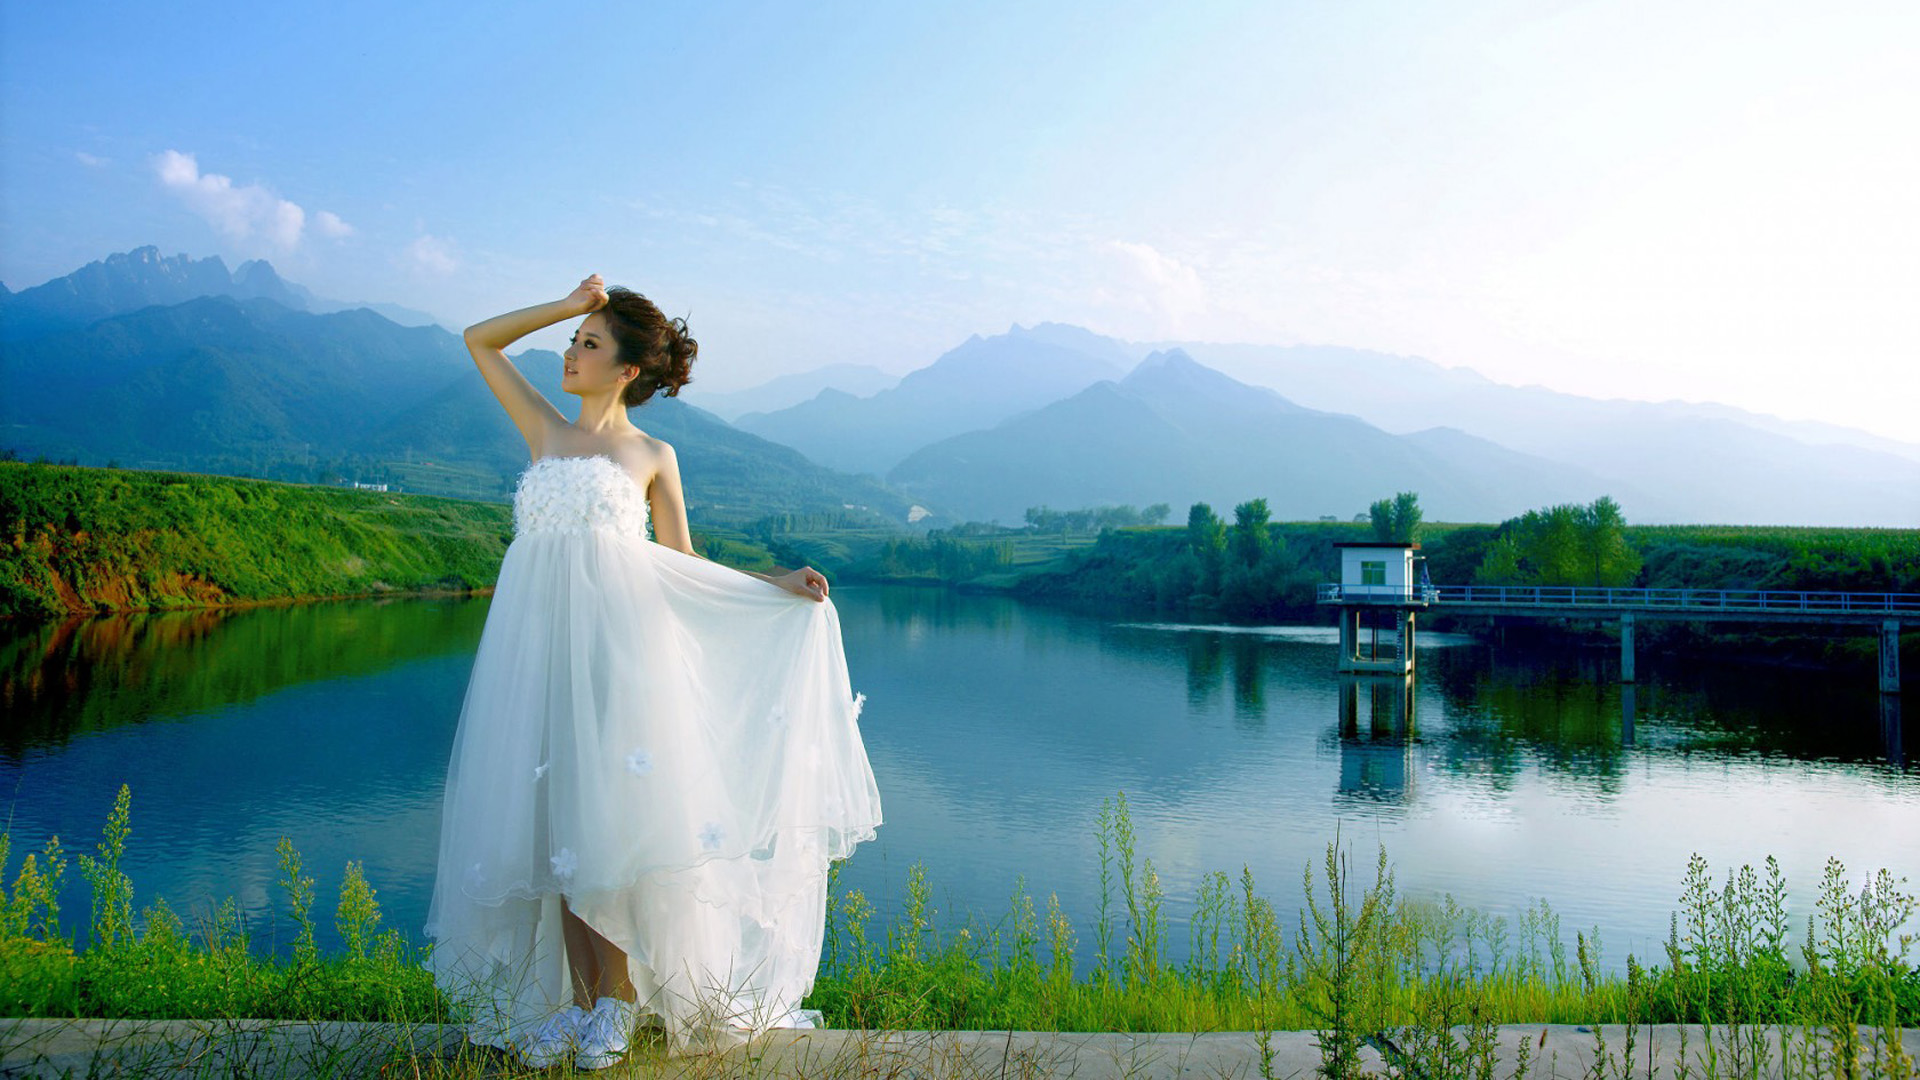 自然山水风景,白色纱礼服,婚纱美女壁纸